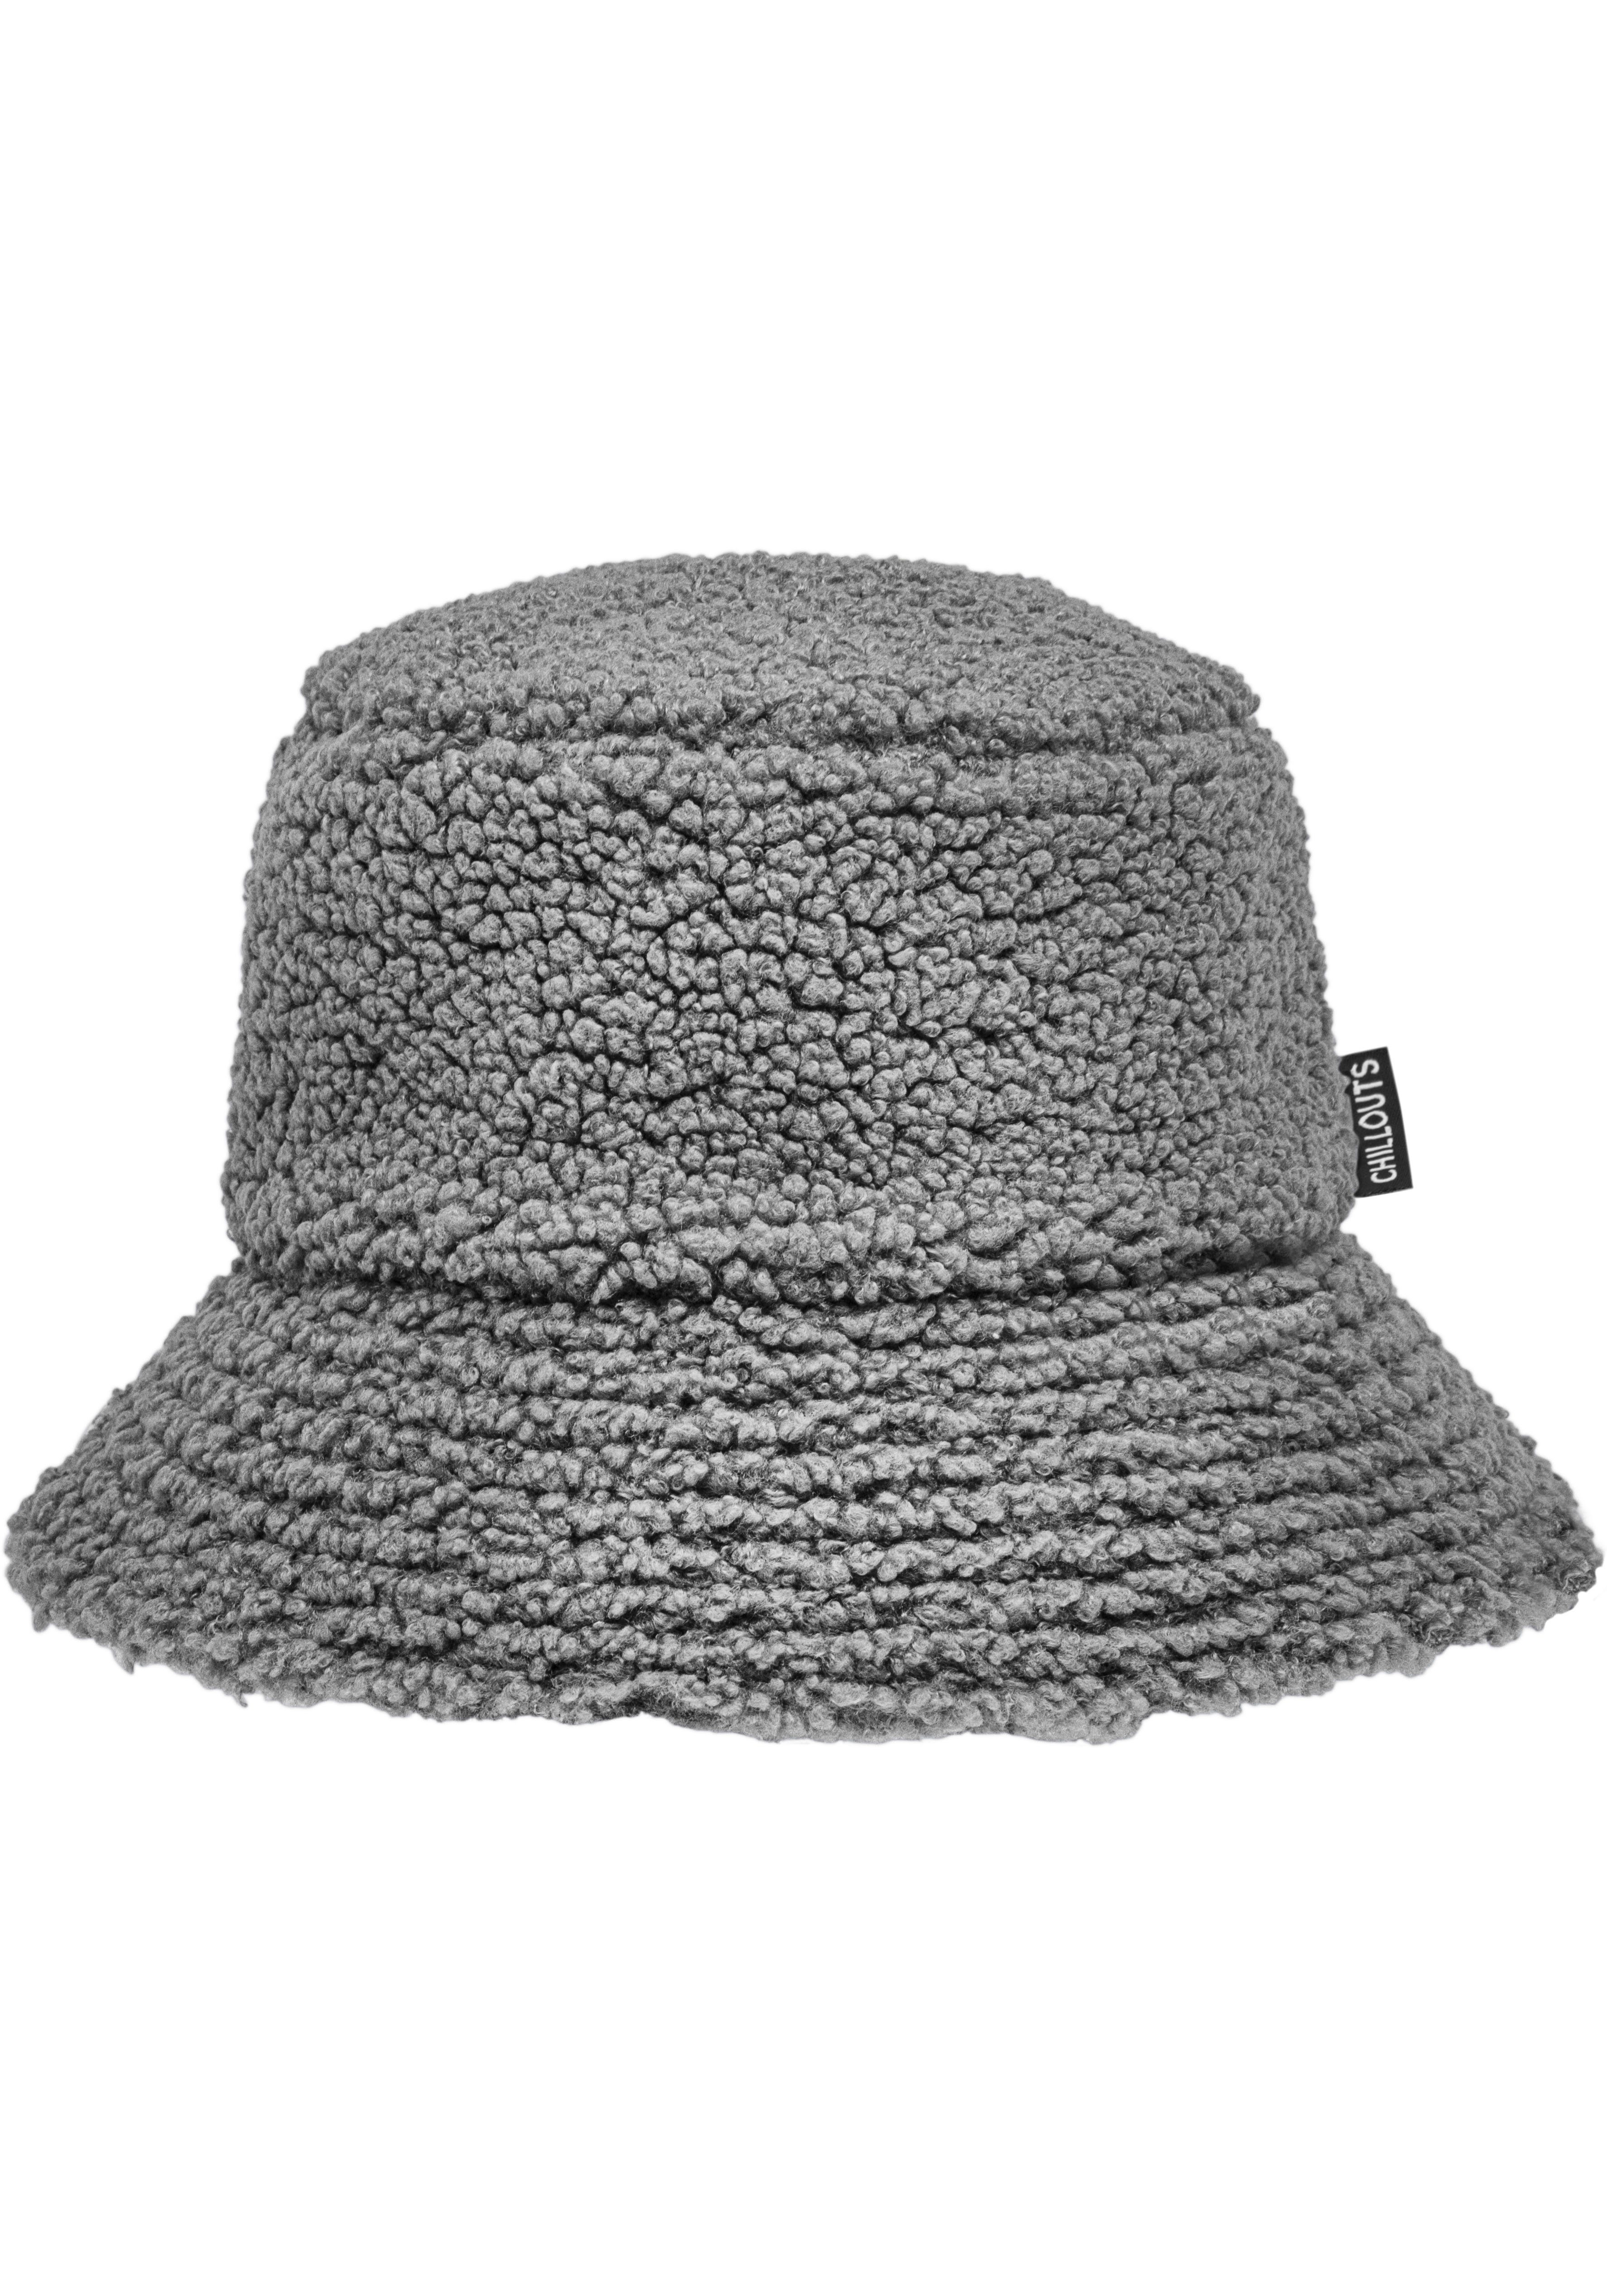 tragbar grey chillouts Selma beidseitig Fischerhut Wendehut Hat